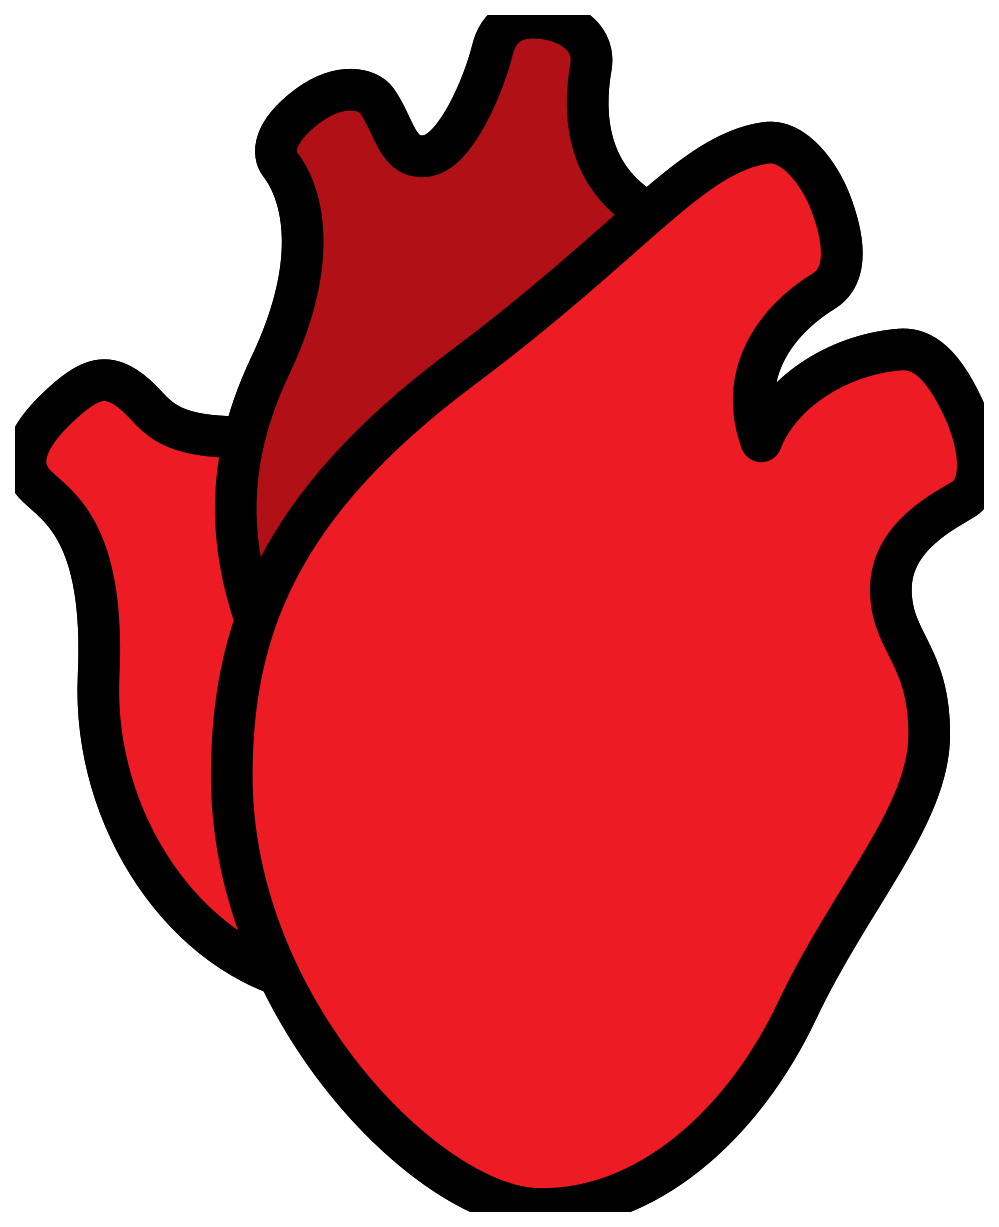 Immagine del PNG del cuore umano rosso